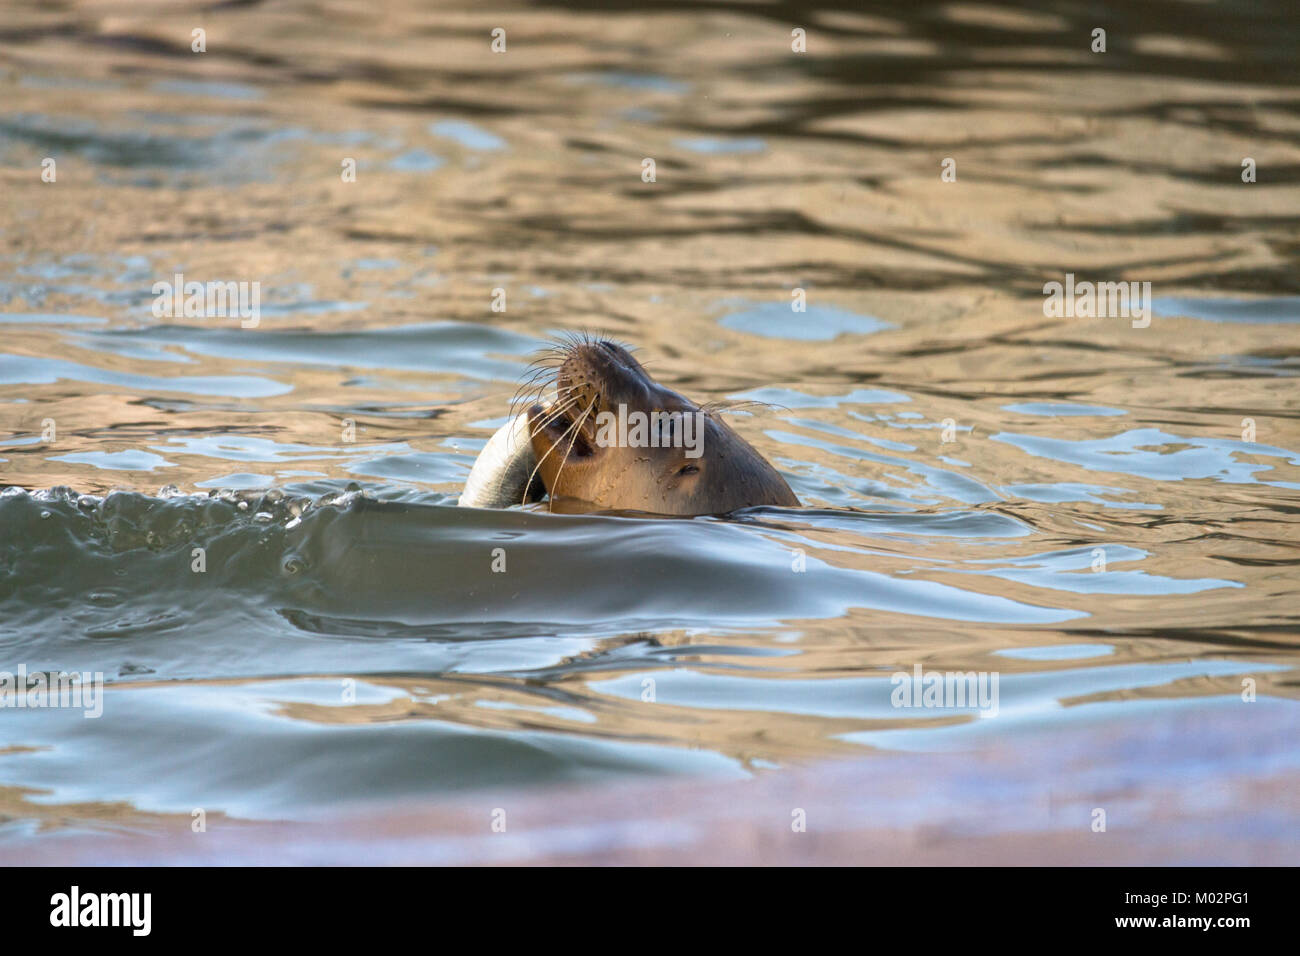 Dichtung der Verzehr von Fisch in Wasser - Gemeinsame Dichtung stossen oben auf seinen Kopf aus dem Wasser in der Nähe der Wasser essen ein Fisch in Hunstanton, Großbritannien Stockfoto